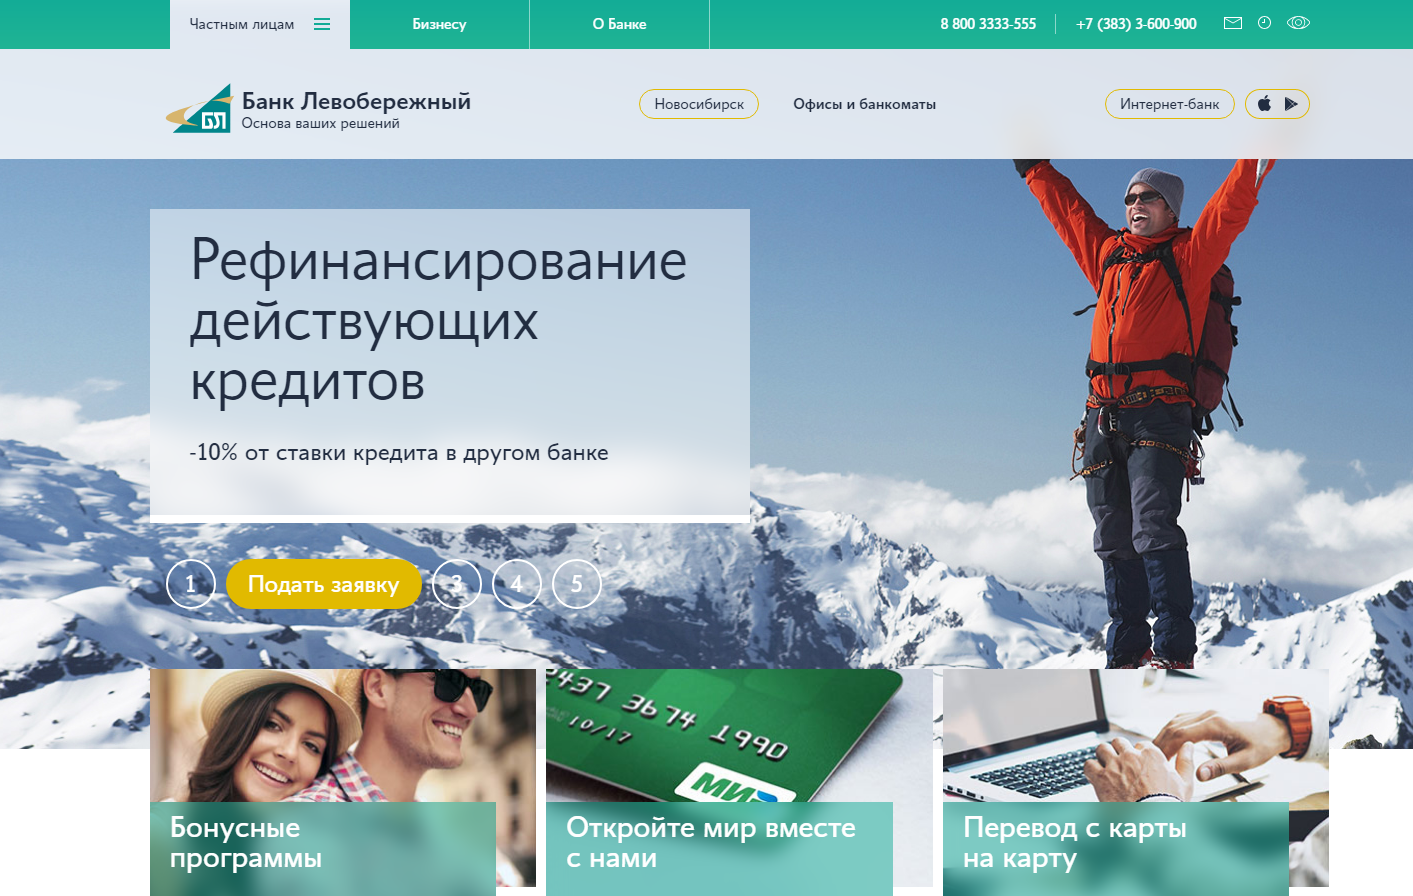 Банк «Левобережный» вошел в ТОП-3 рейтинга лучших интернет-банков России